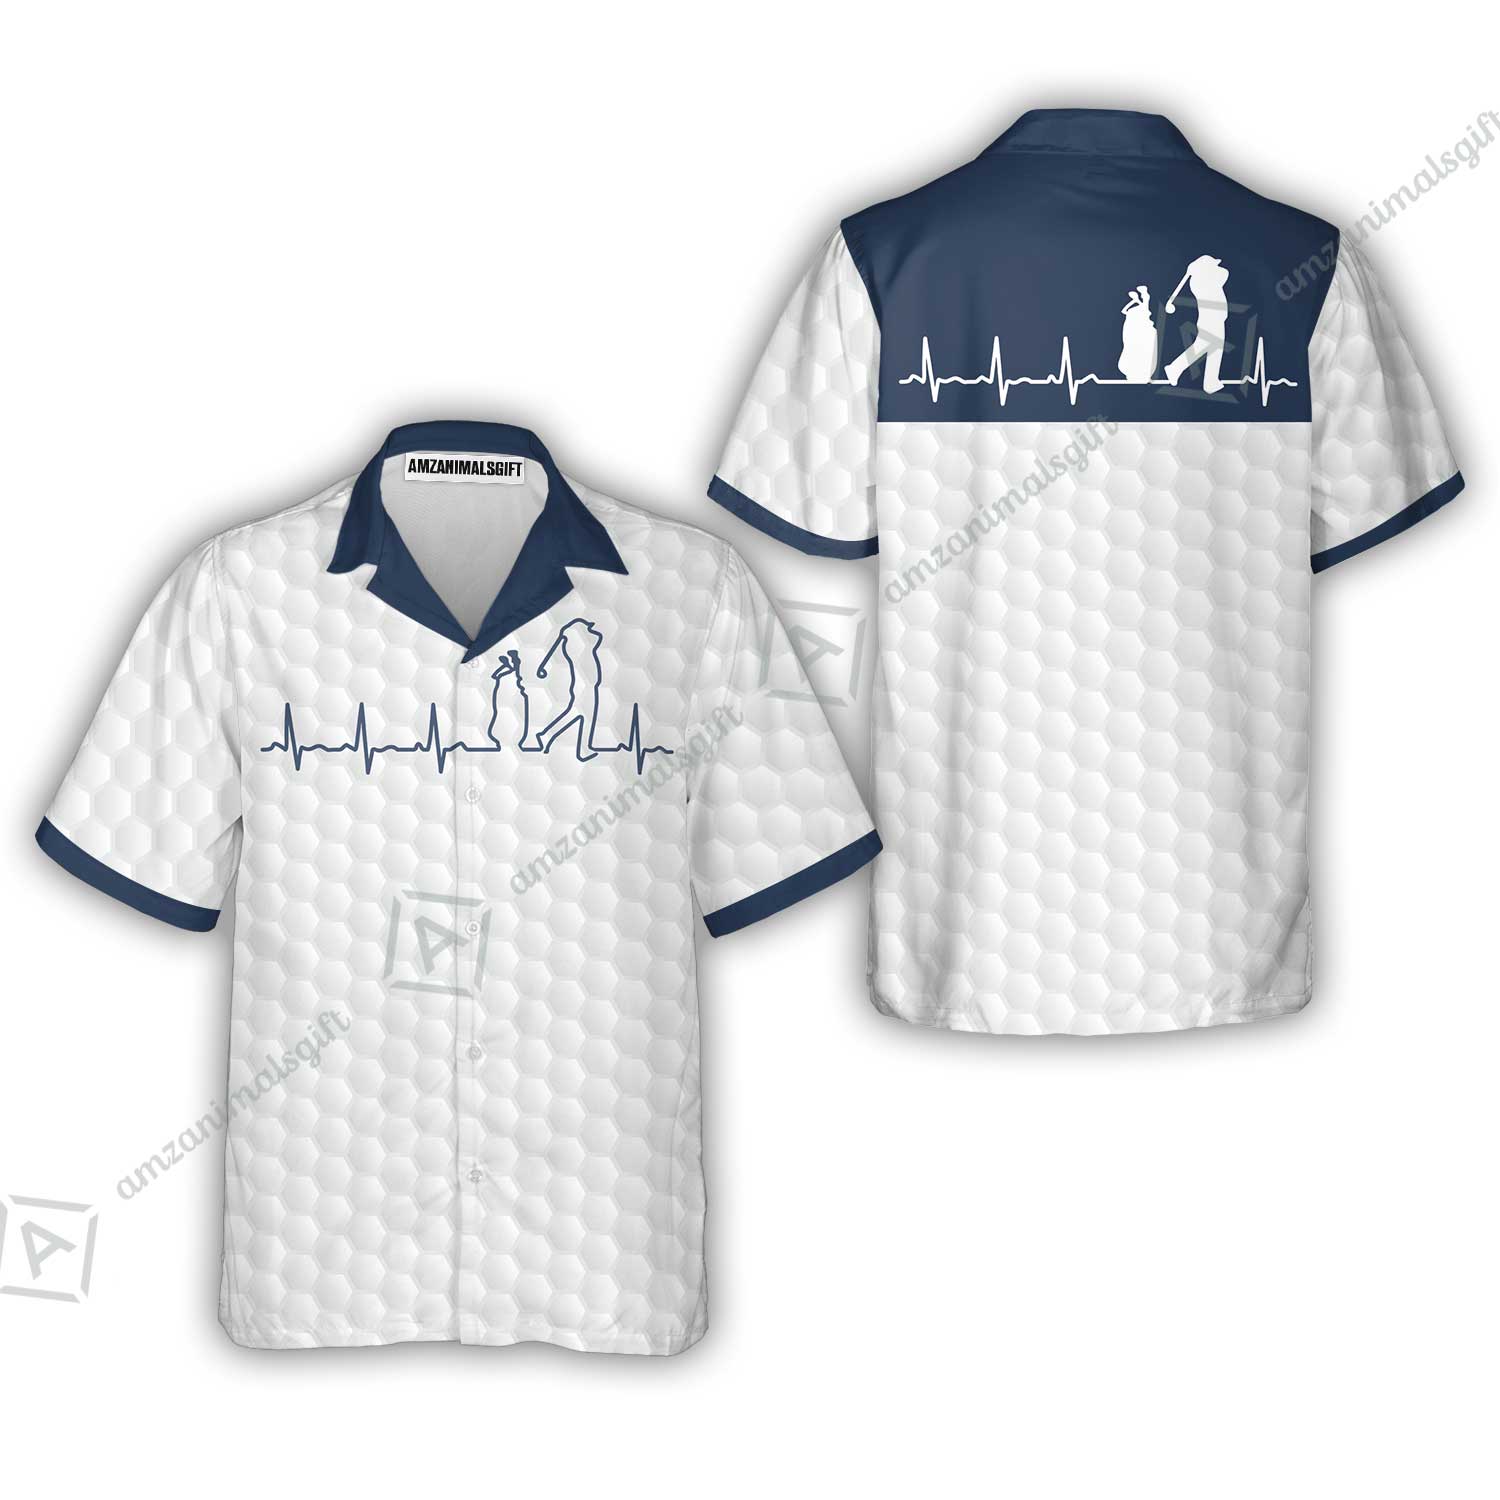 Golf Hawaiian Shirt - Heartbeat Golfer White And Navy Golf Hawaiian Shirt, White Golf Ball Pattern Hawaiian Shirt - Best Gift For Golfers